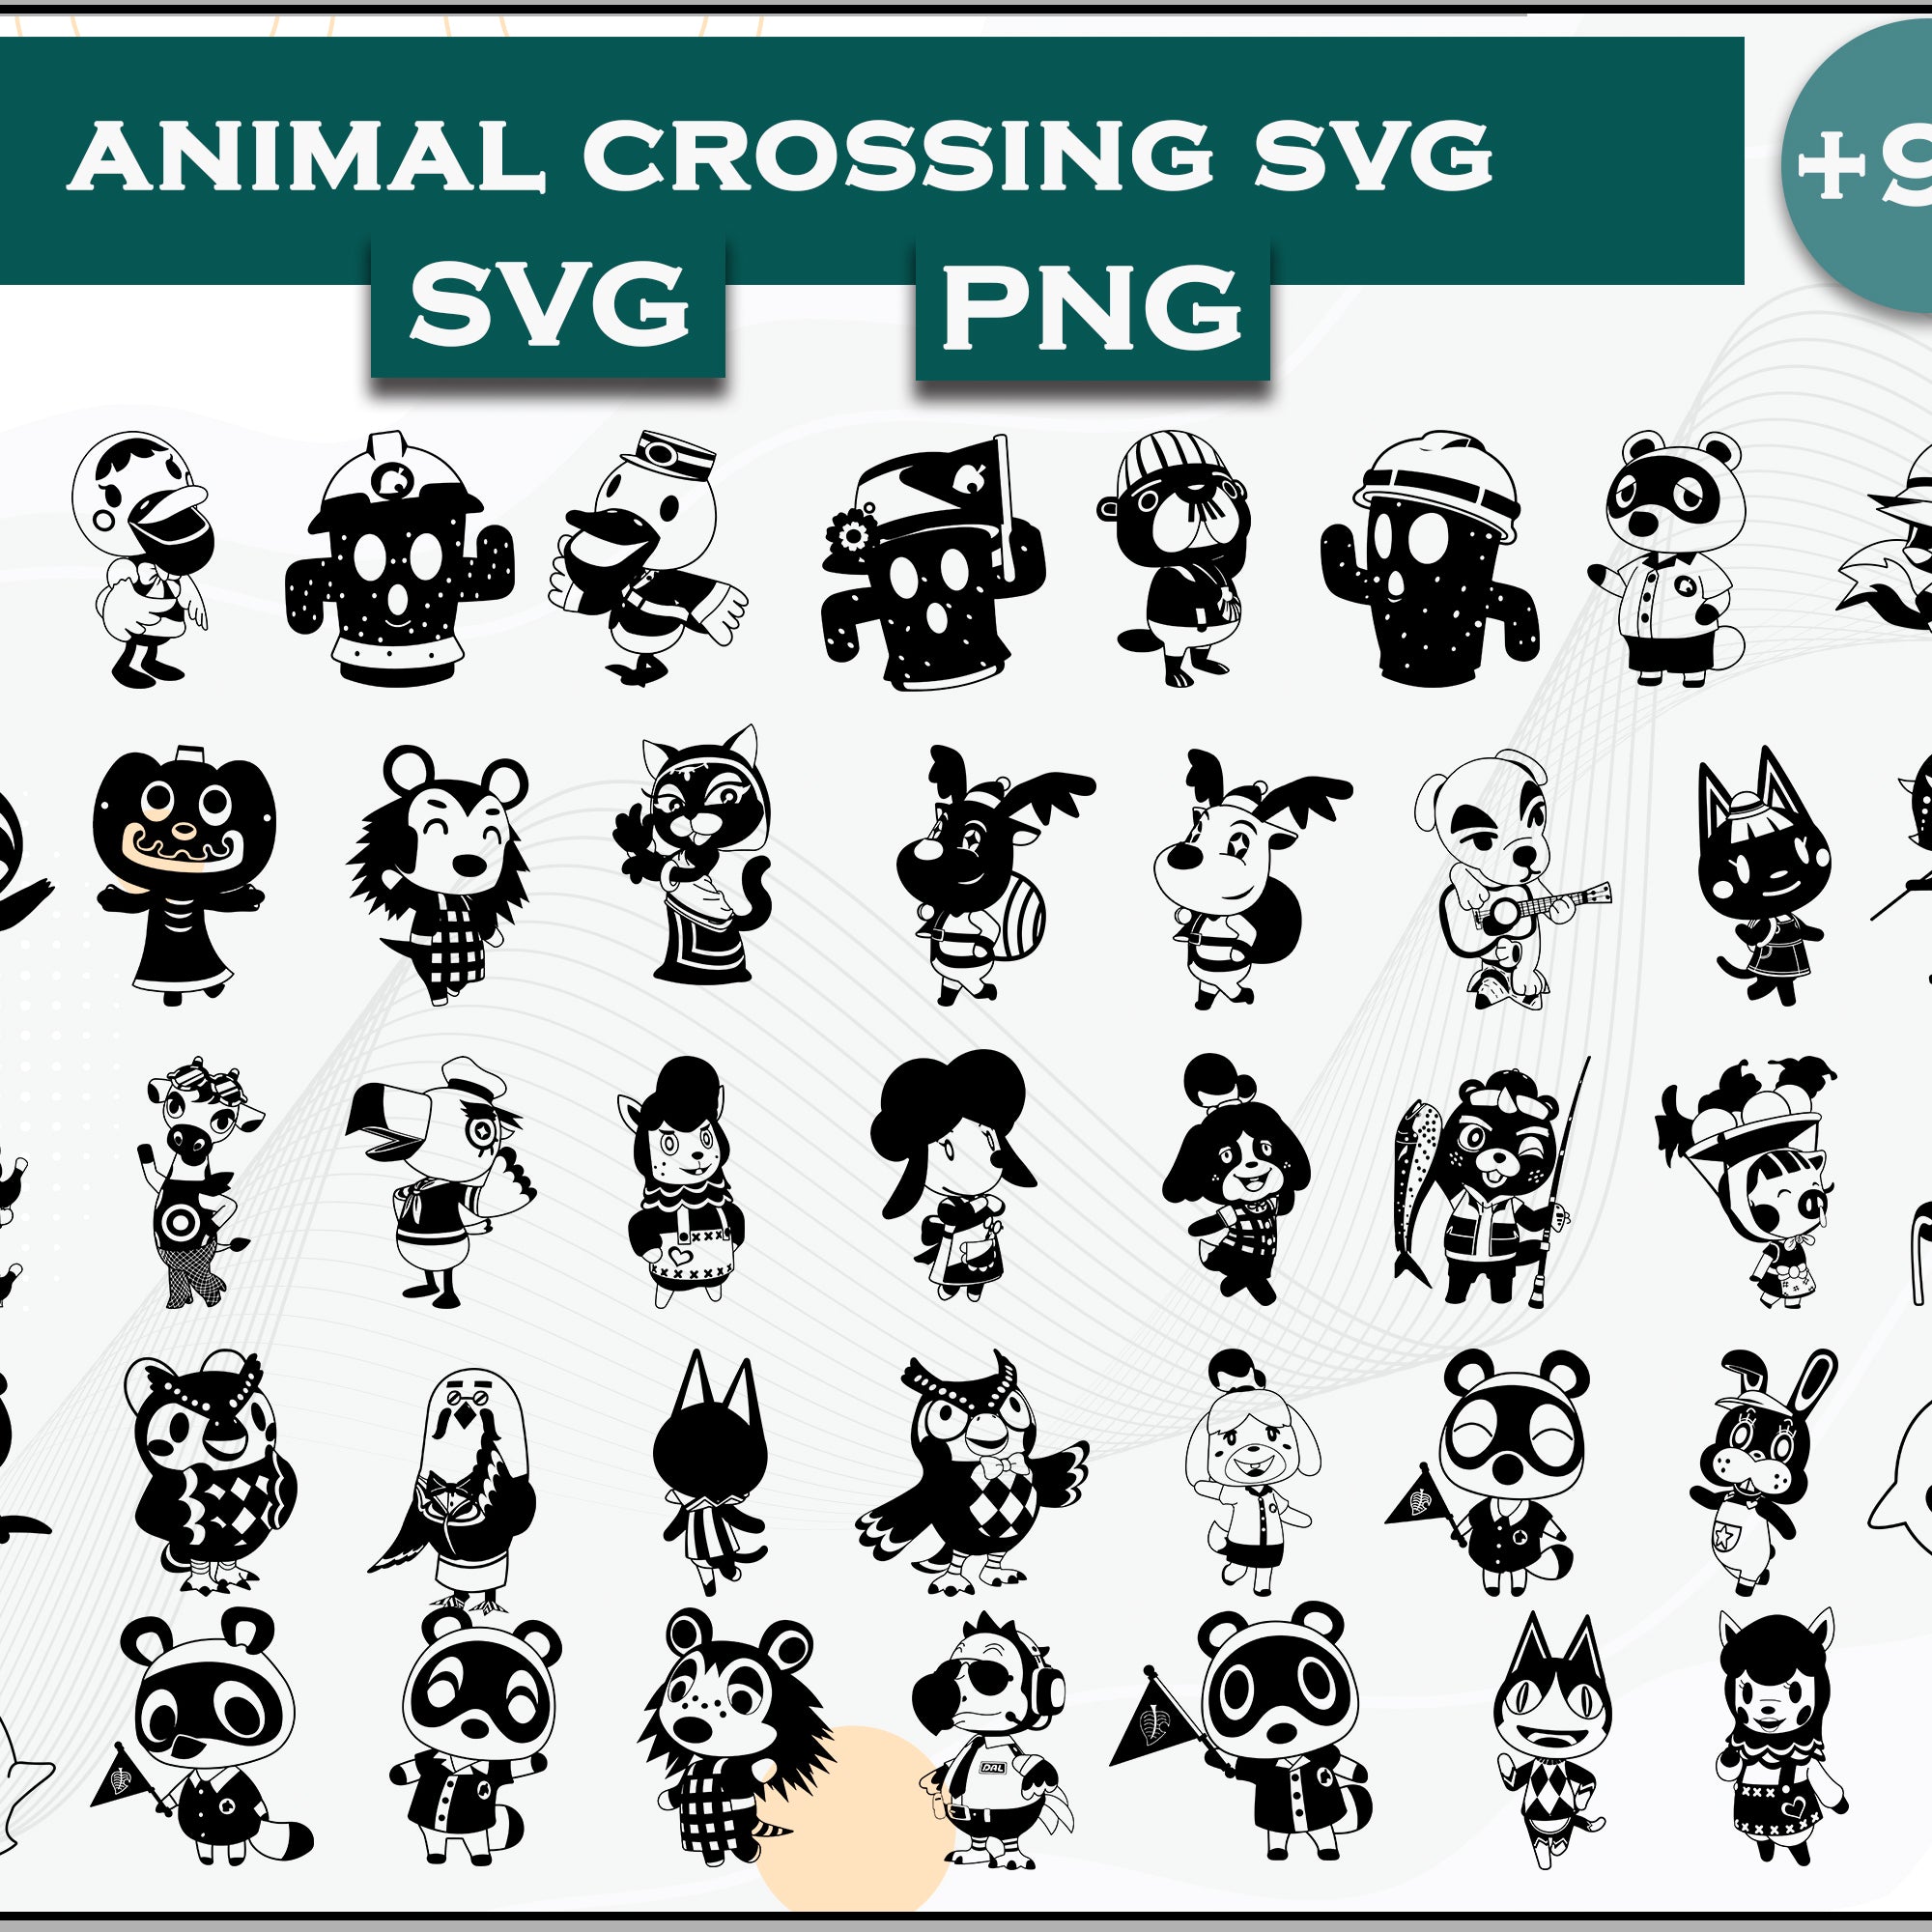 90+ Animals SVG Bundle, Animal Crossing Svg Bundle, Animal Crossing Svg, Cartoon svg, png, dxf, eps digital file